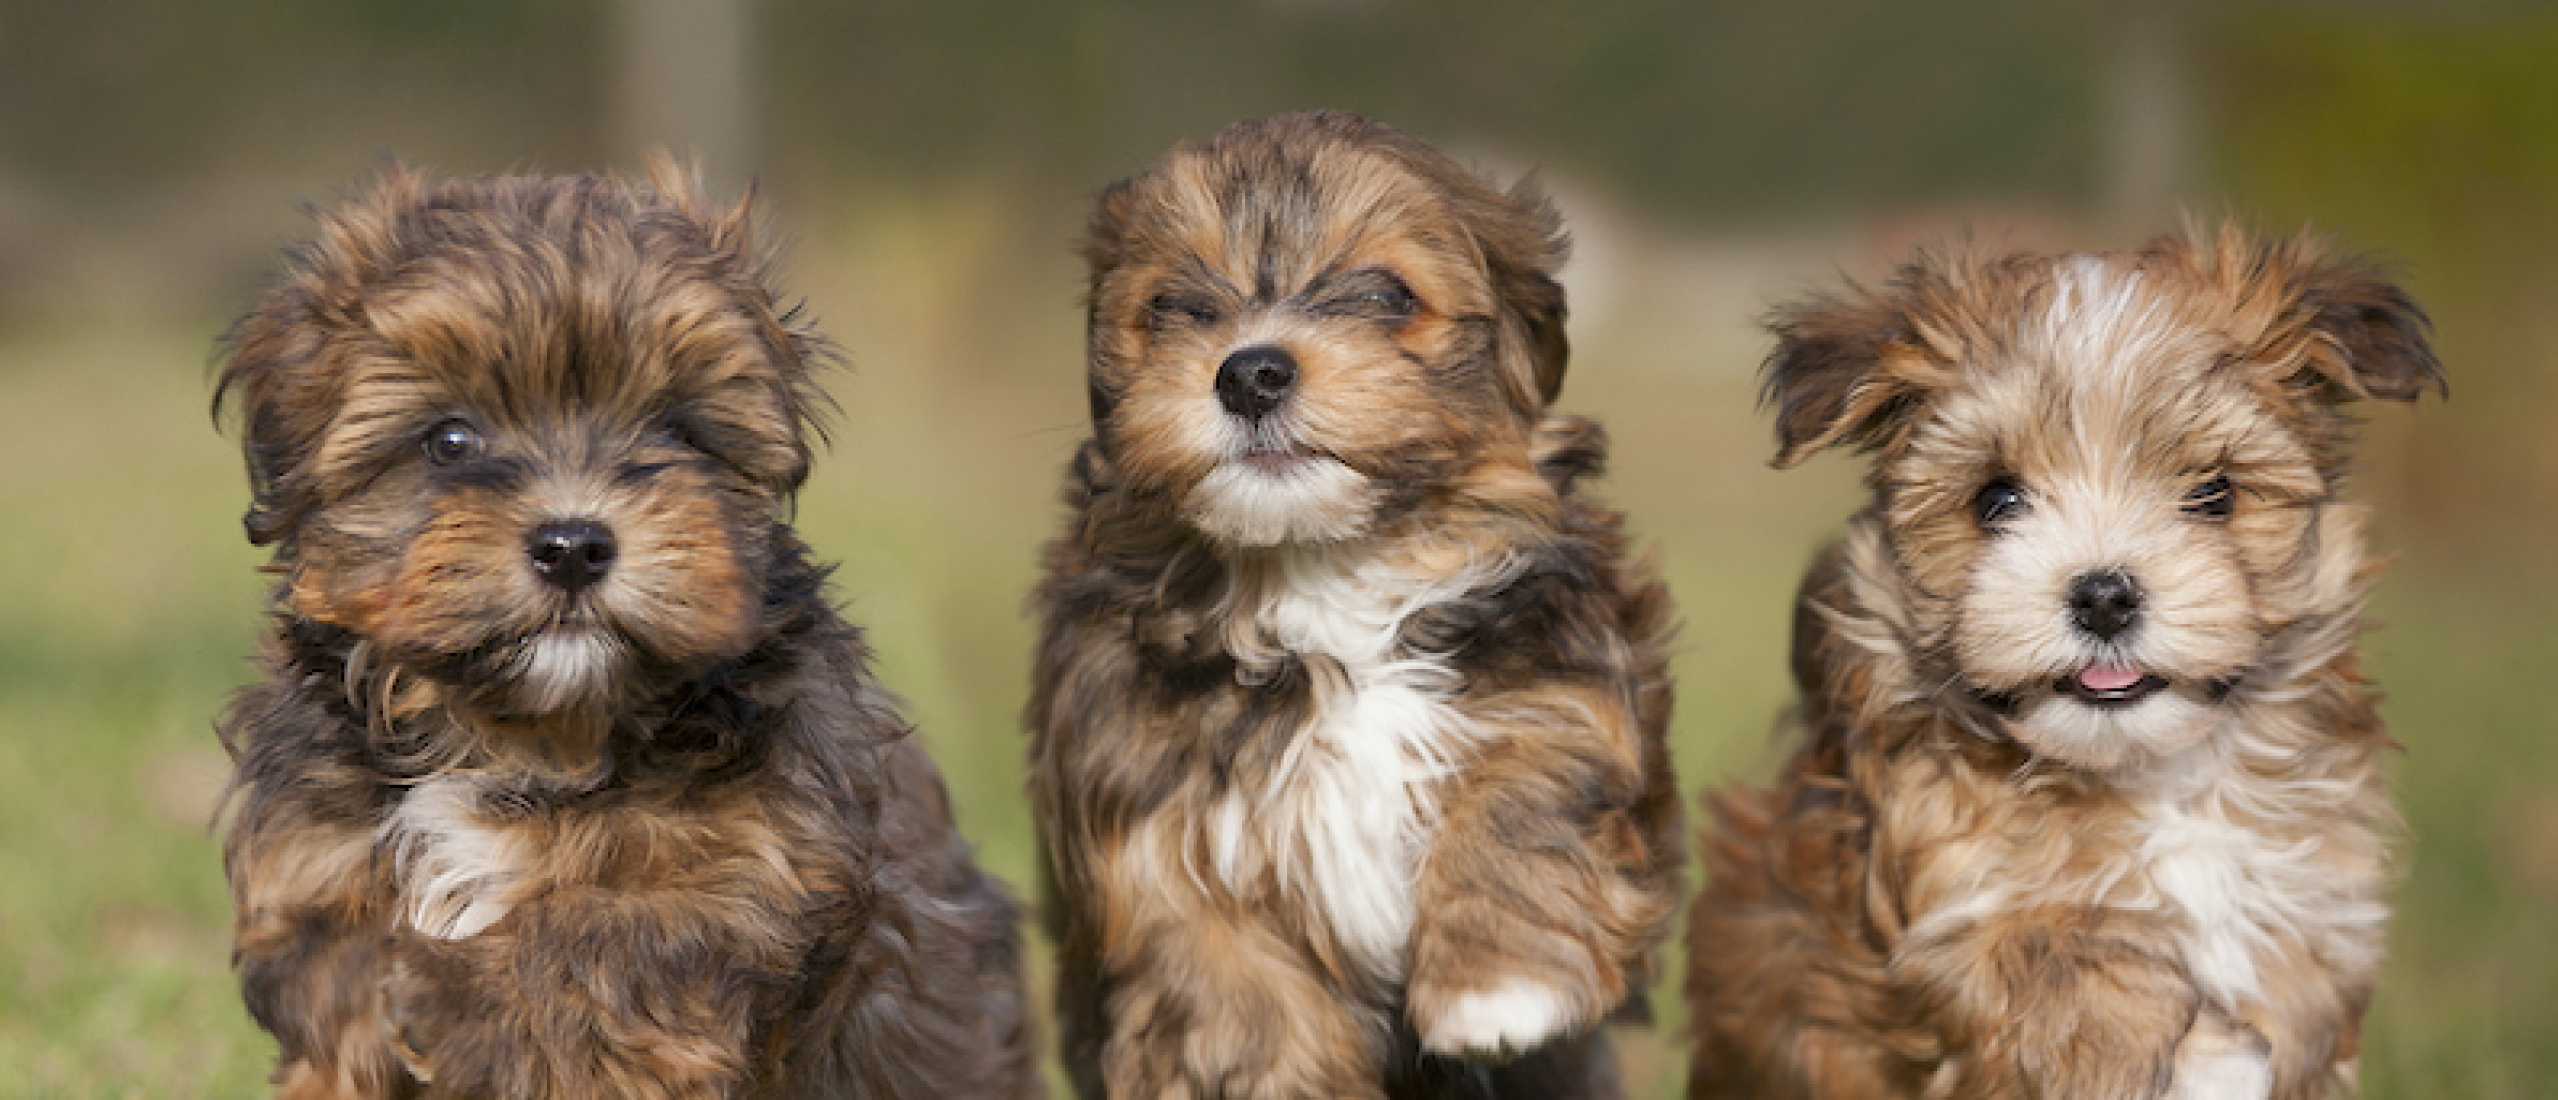 Feestelijk Leren: Hoe Puppy Parties de Sociale Vaardigheden van Je Hond Versterken